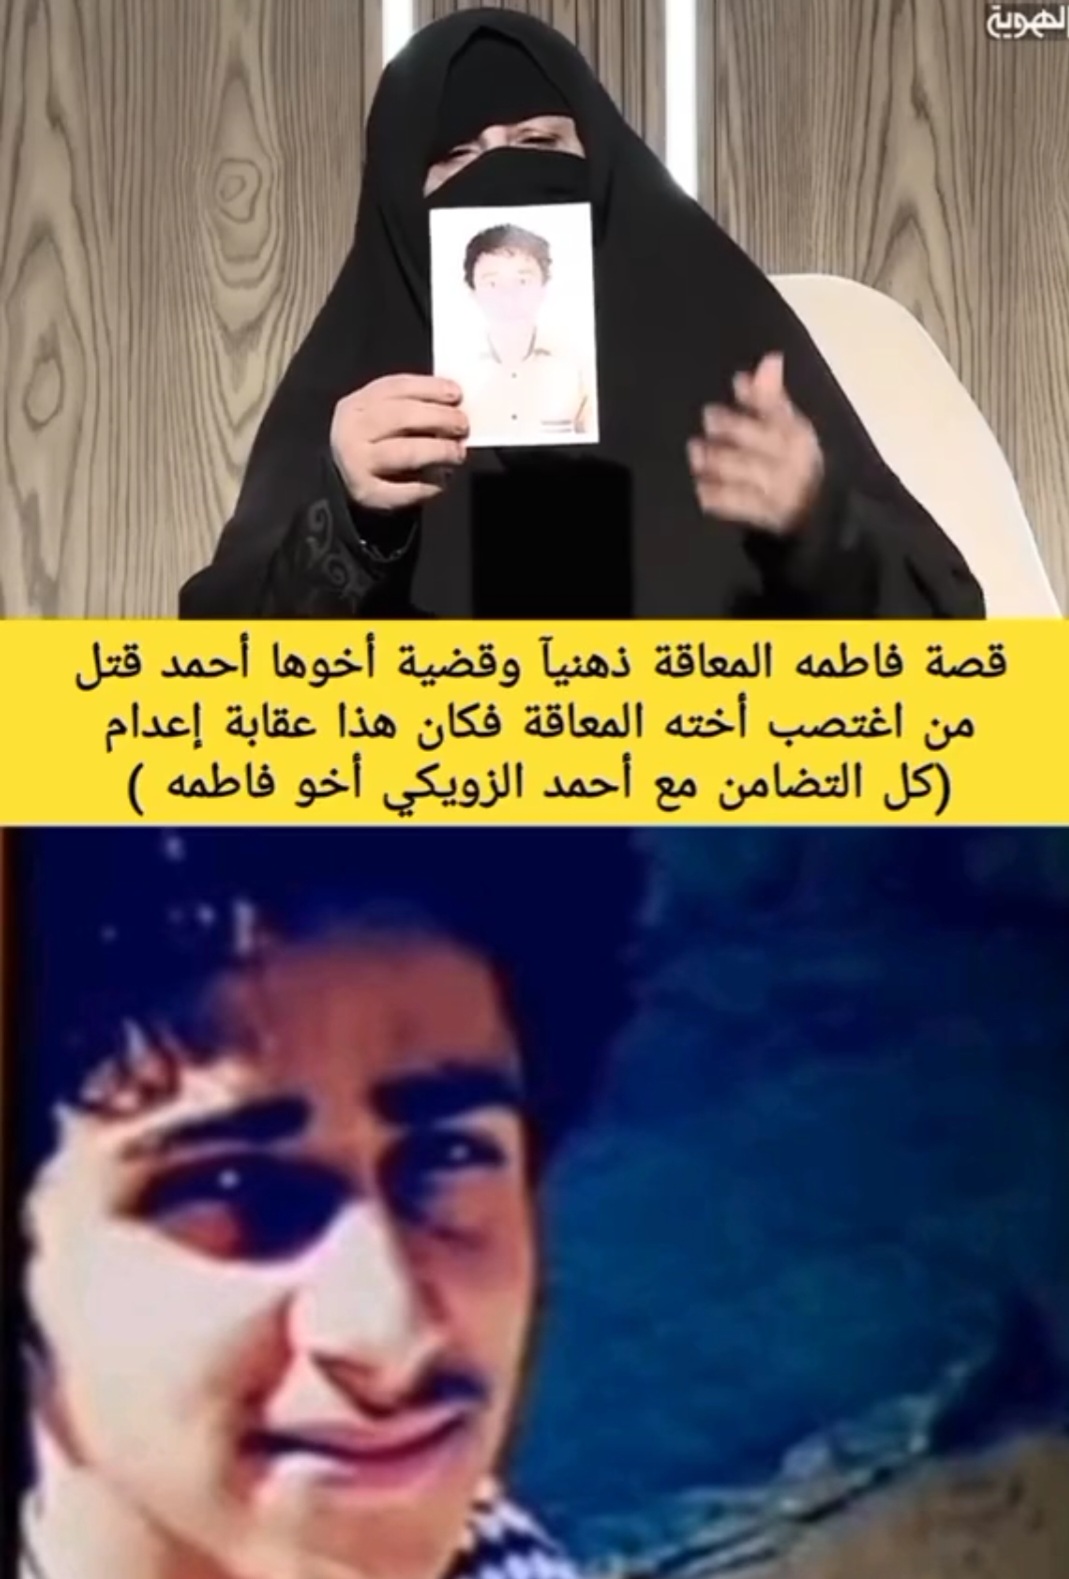 قصة فاطمه المعاقه التي ضجت لها منصات التواصل الاجتماعي.. والدة أحمد الزويكي تستنجد بكل يمني حر (فيديو)